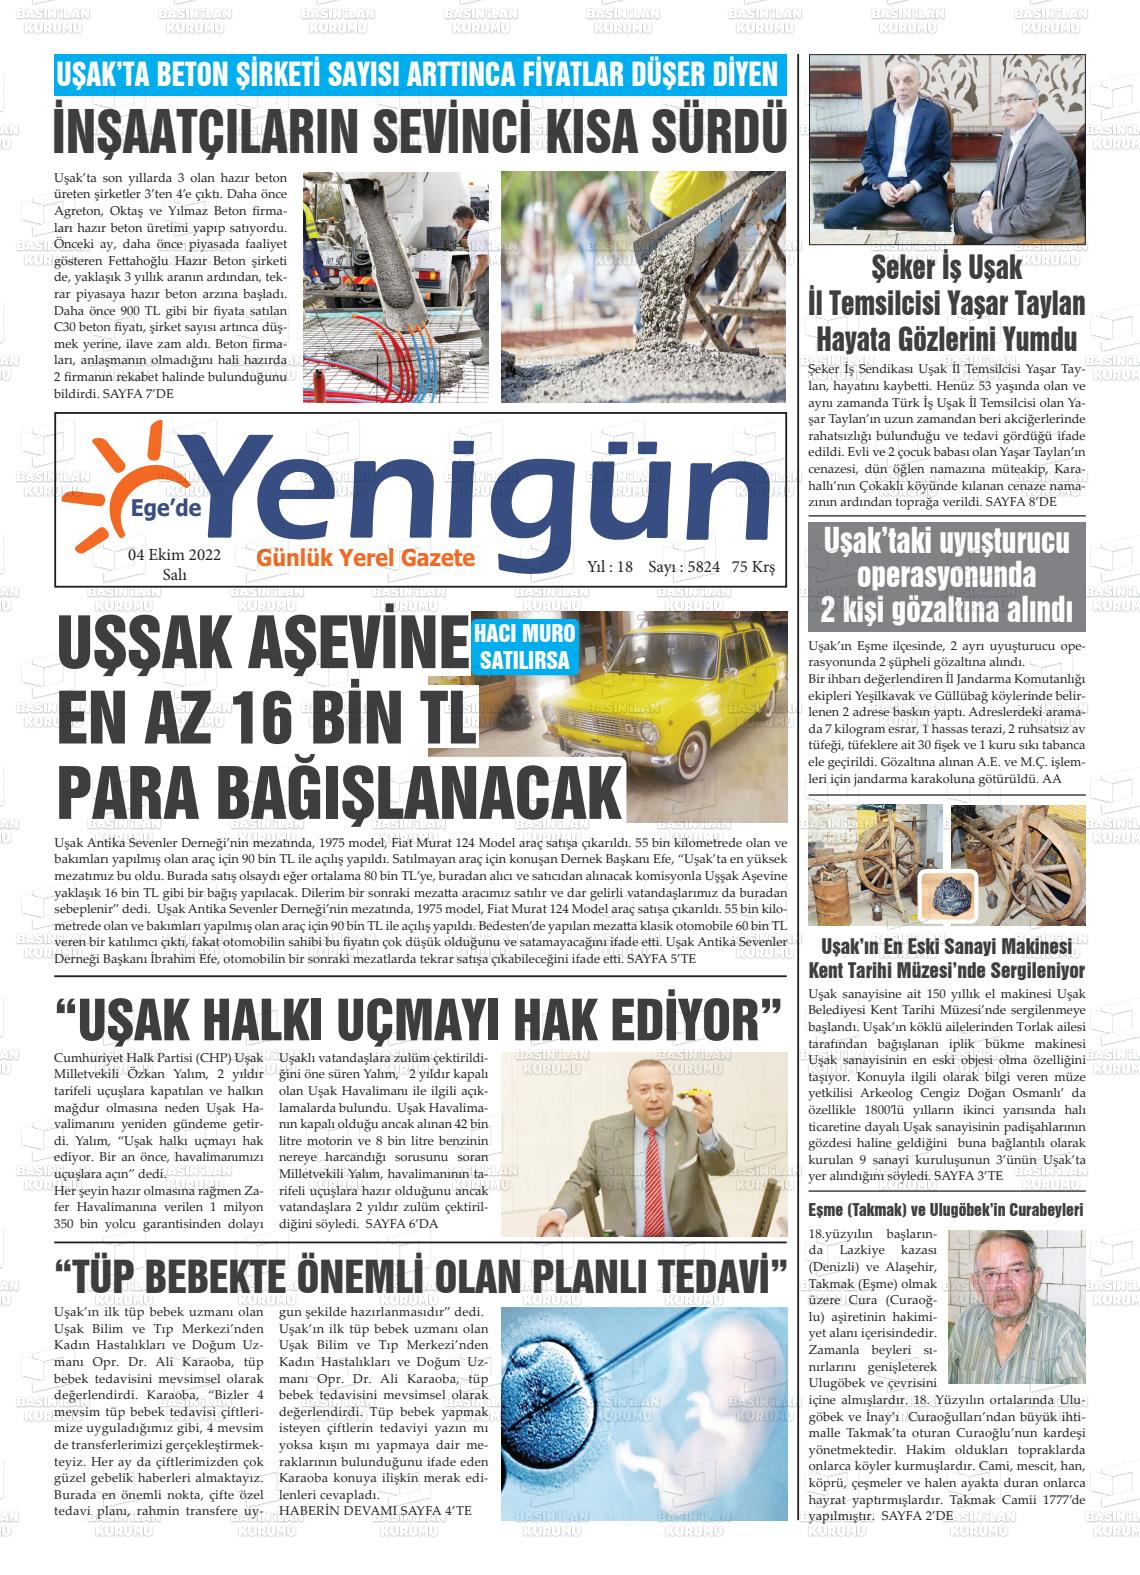 04 Ekim 2022 EGE'DE YENİGÜN GAZETESİ Gazete Manşeti